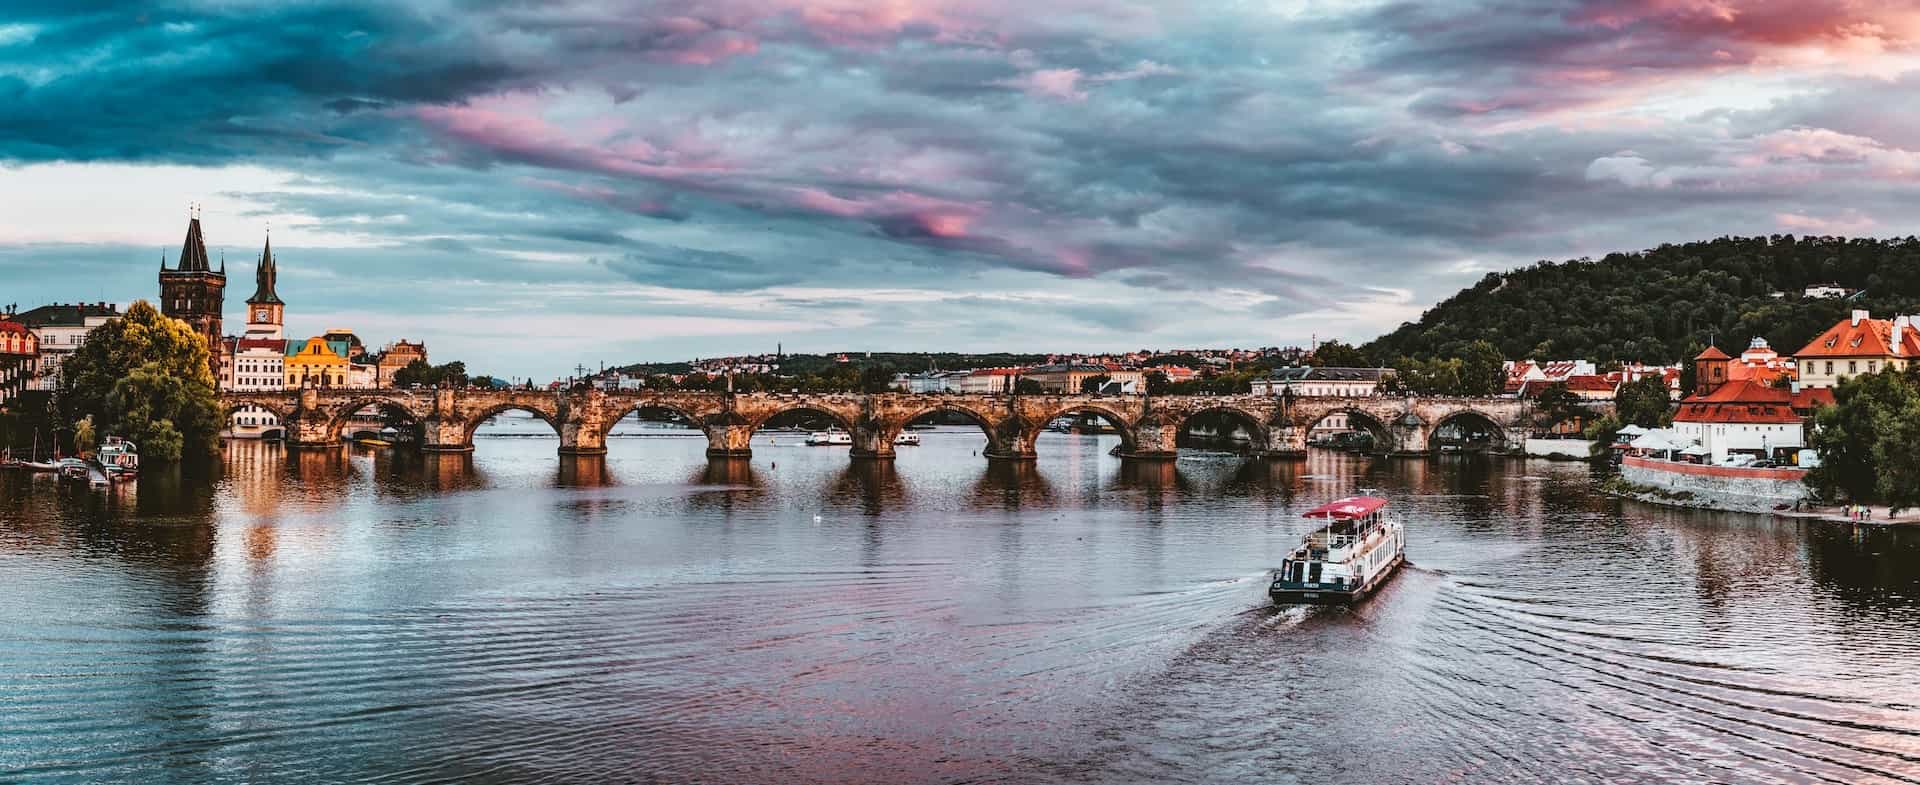 Brücke in Prag, Tschechien.